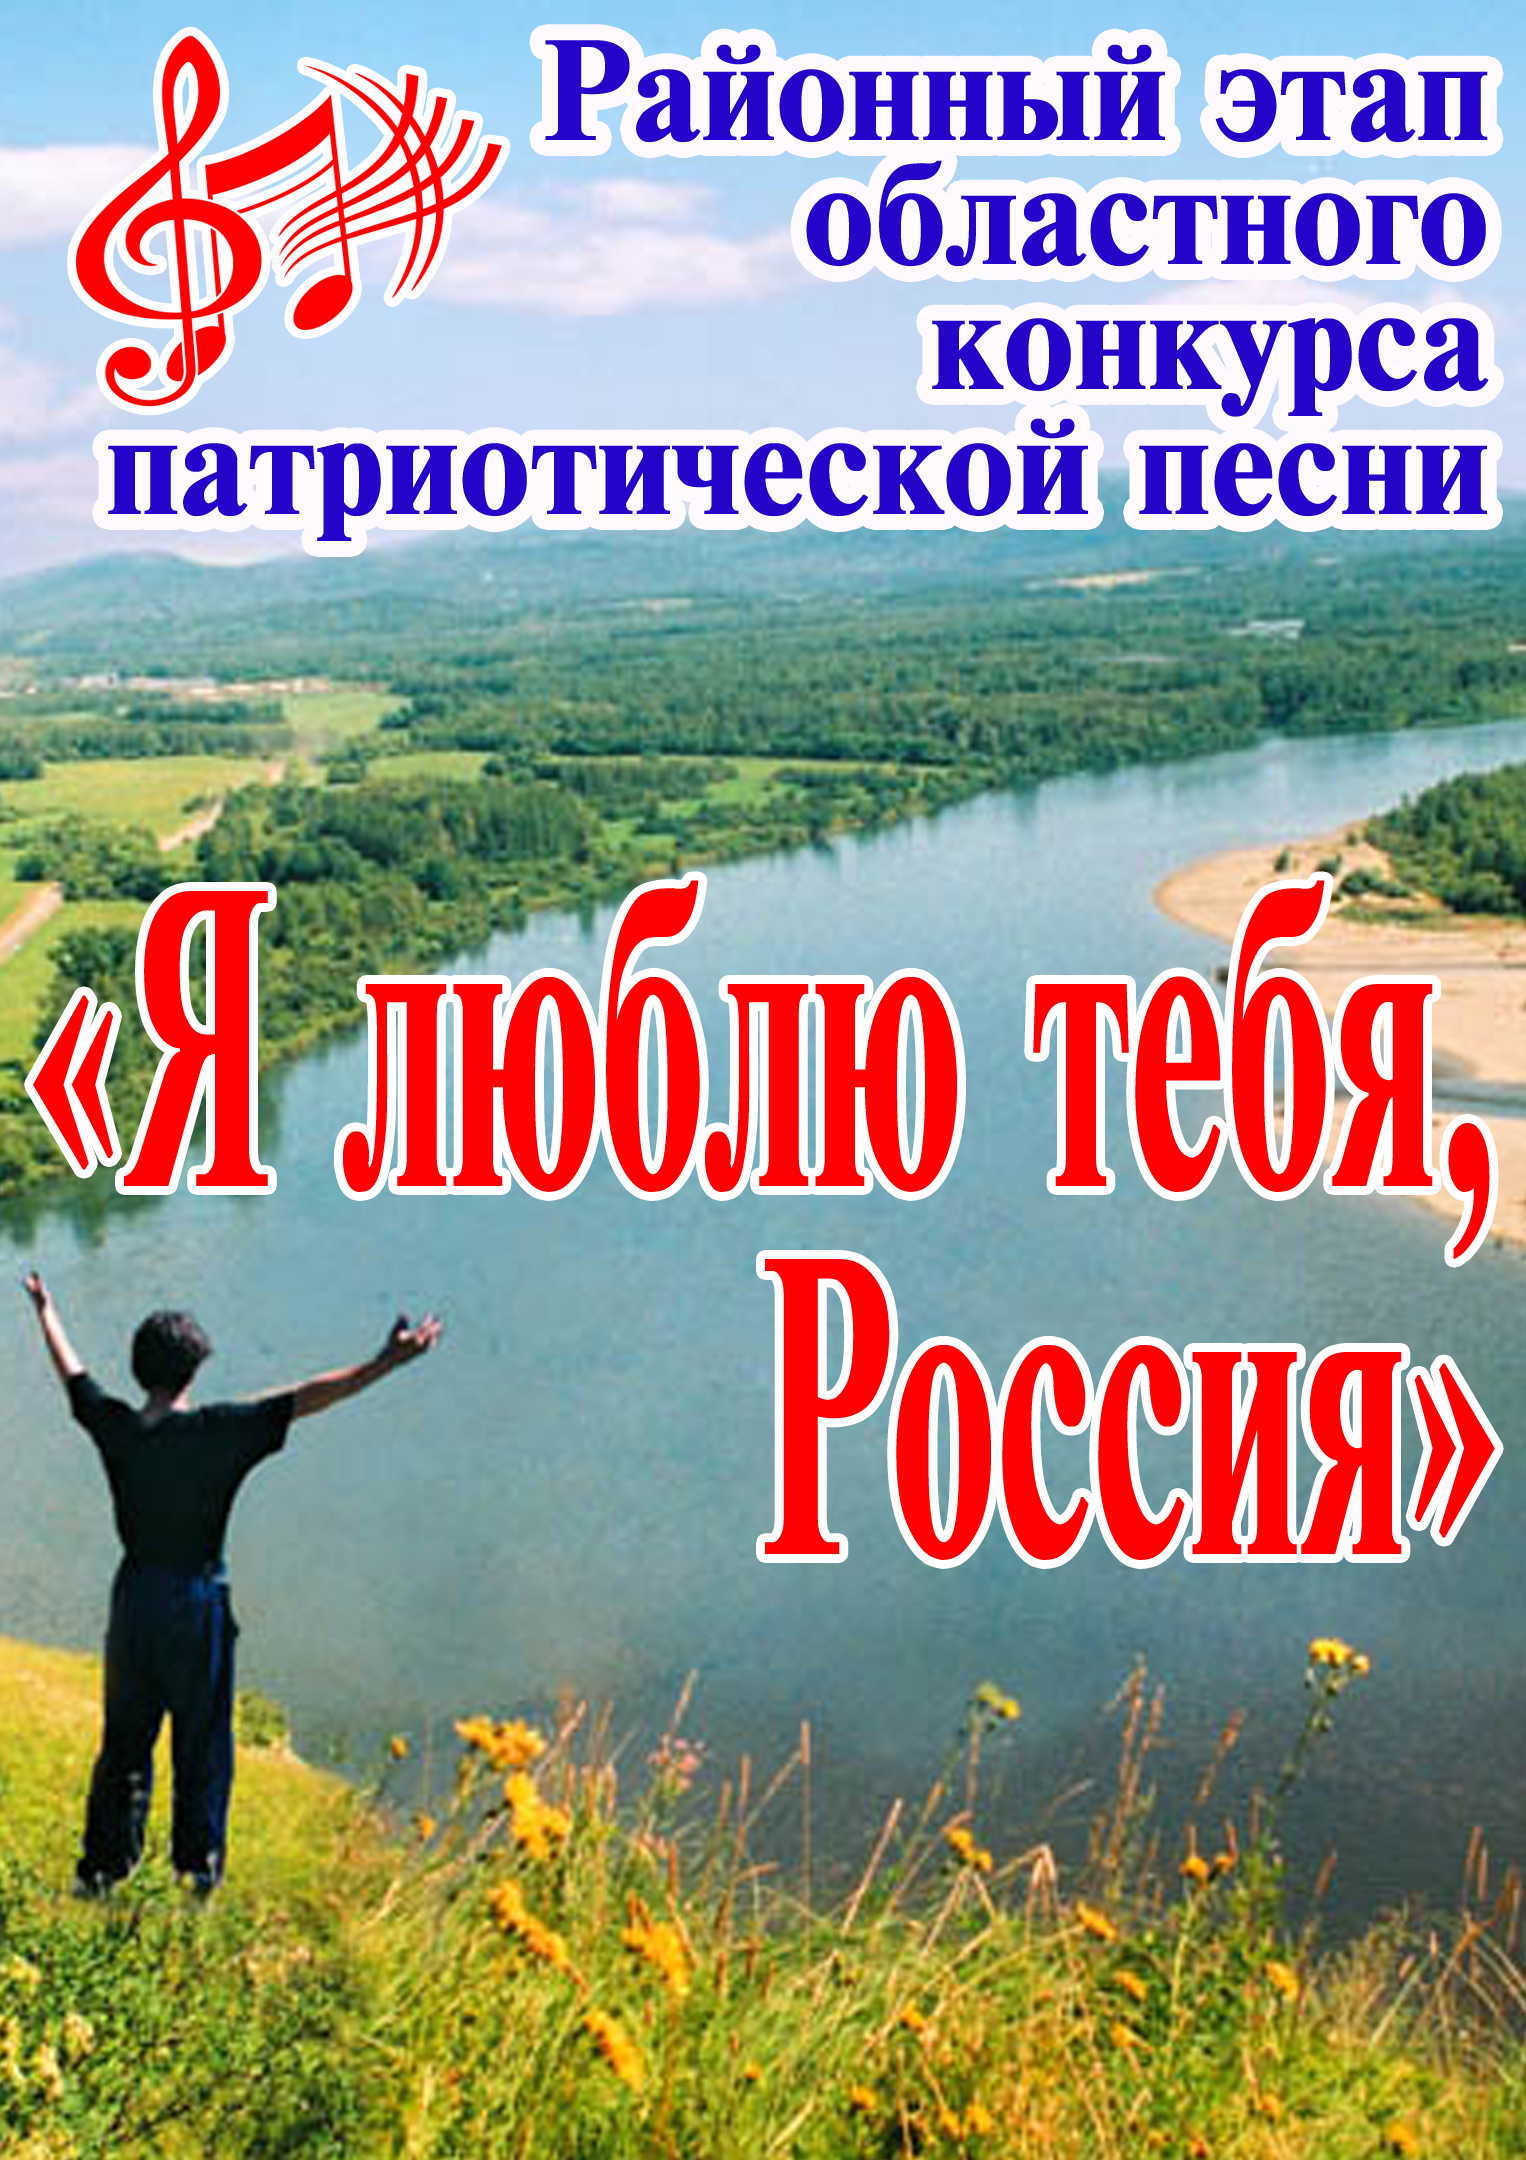 Районный этап областного конкурса патриотической песни «Я люблю тебя, Россия»